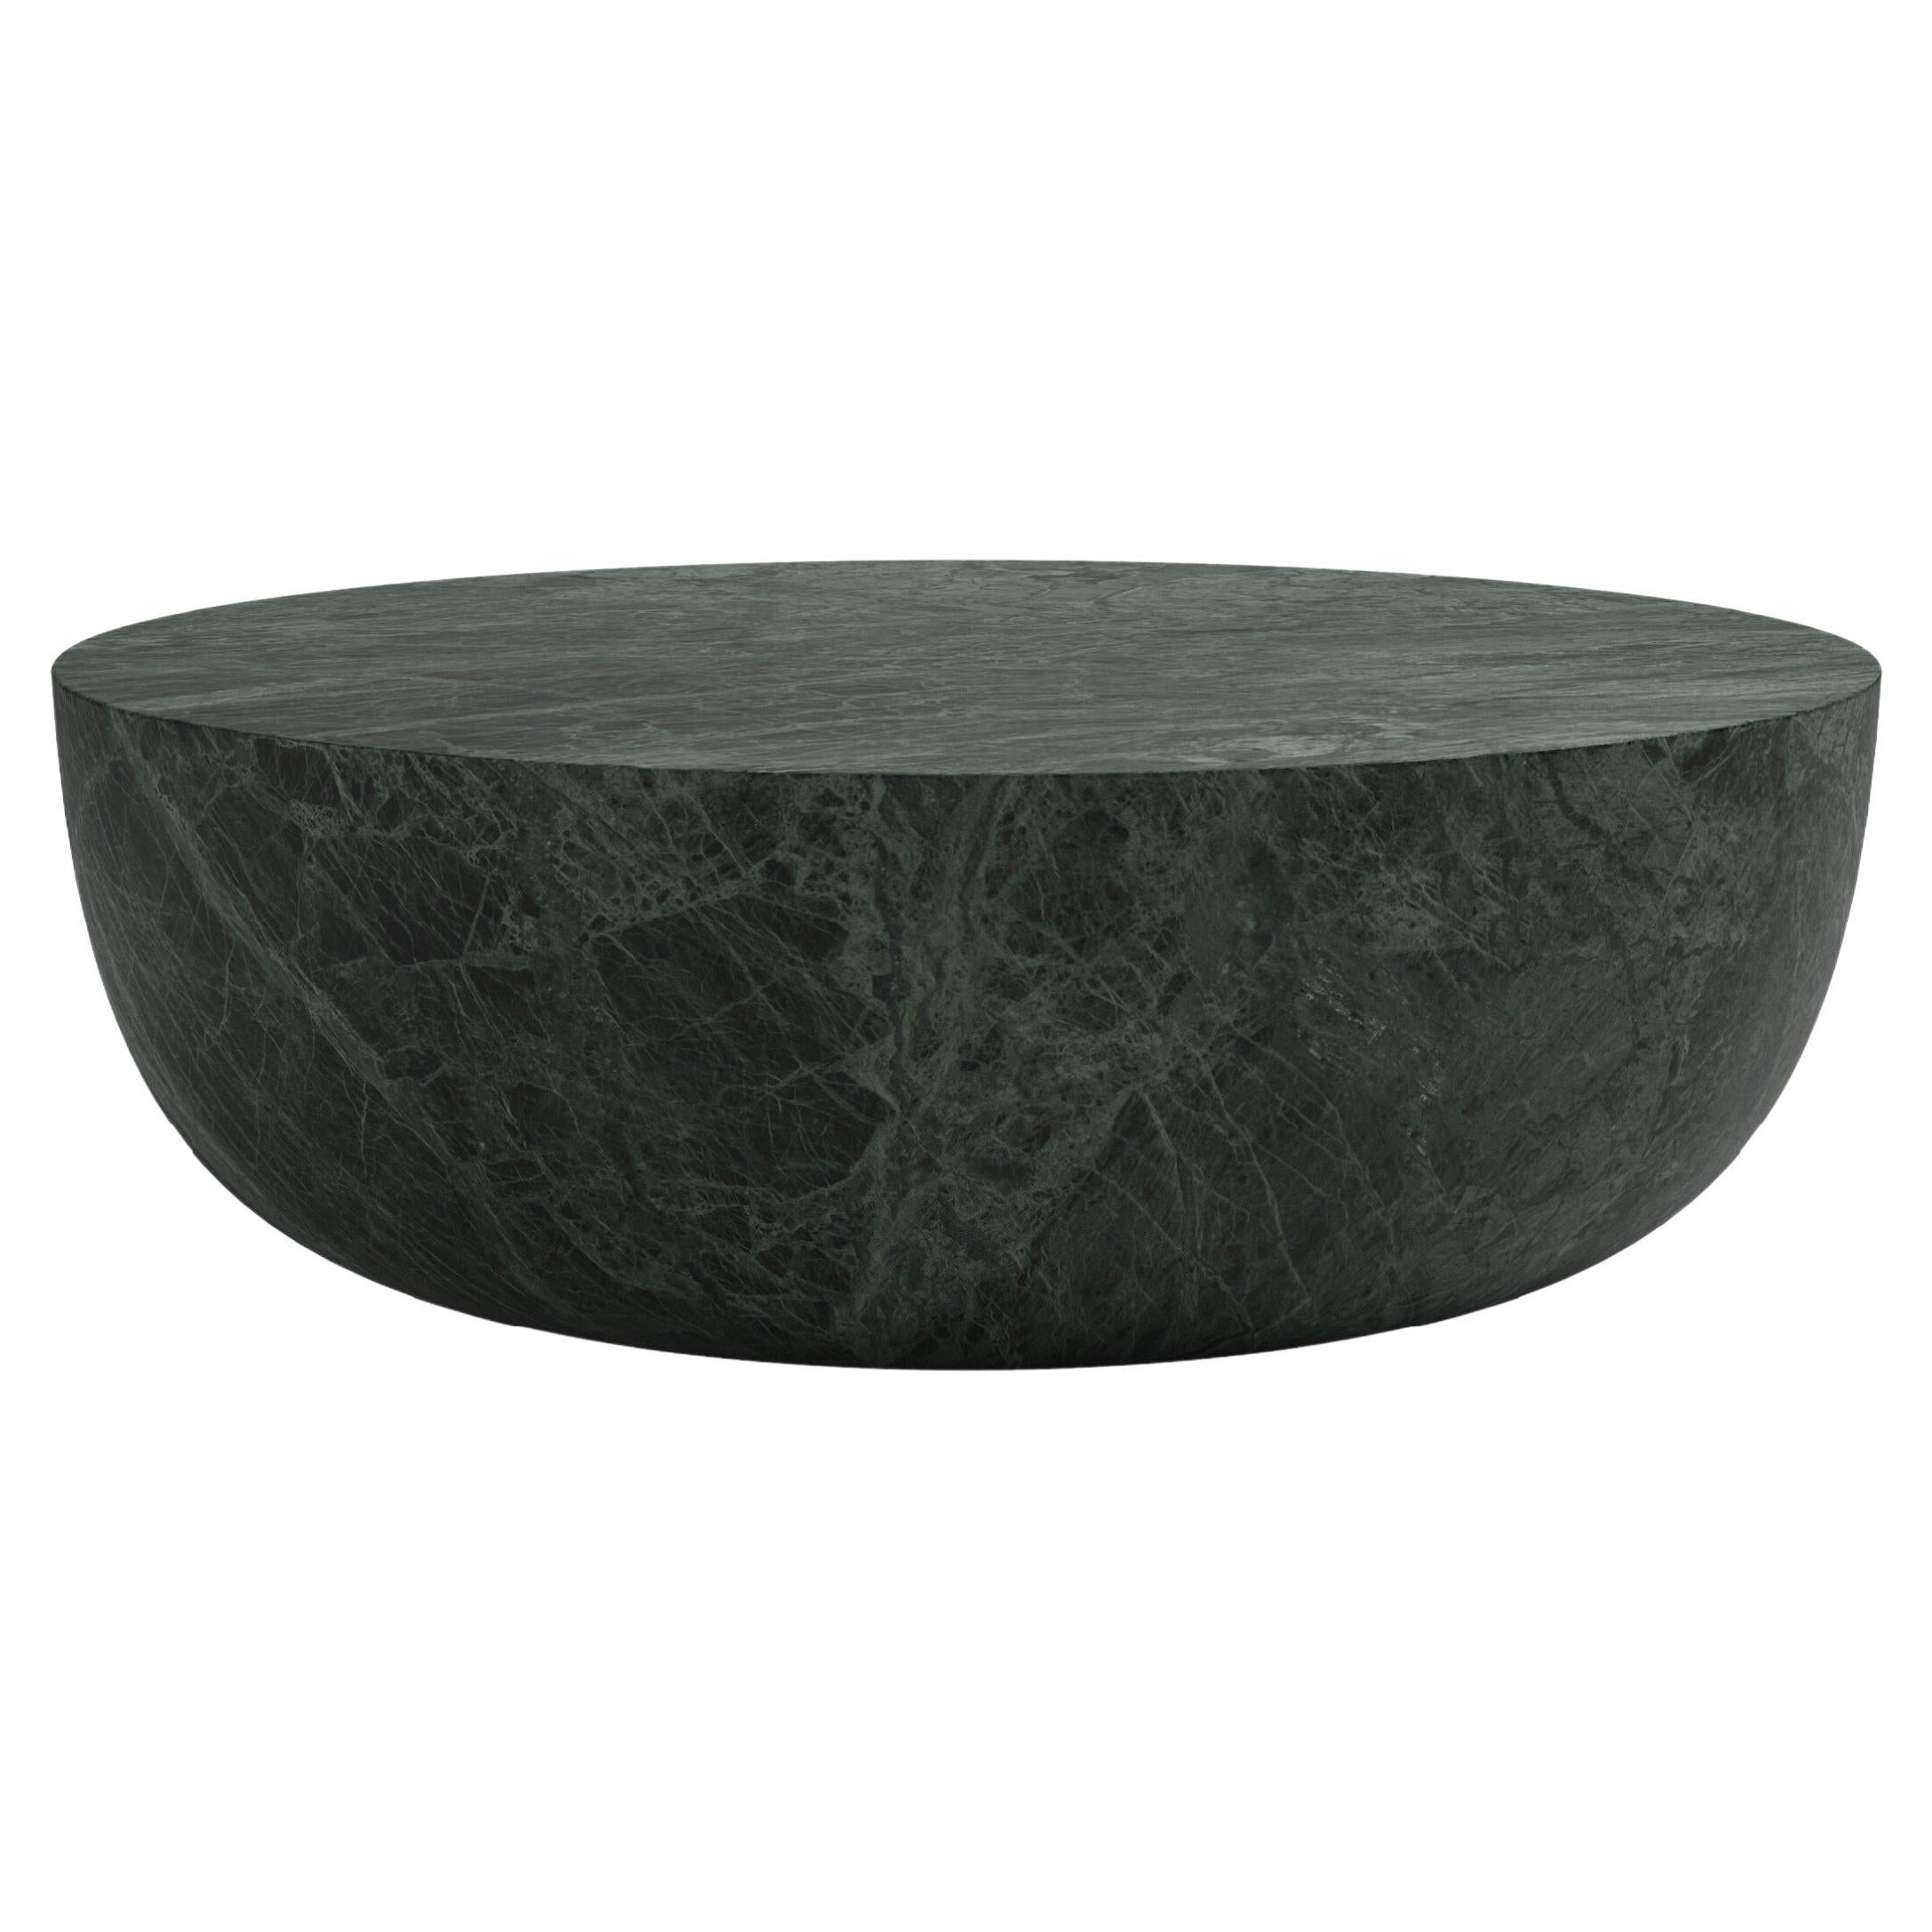 FORM(LA) Sfera Round Coffee Table 54”L x 54”W x 16”H Verde Guatemala Marble